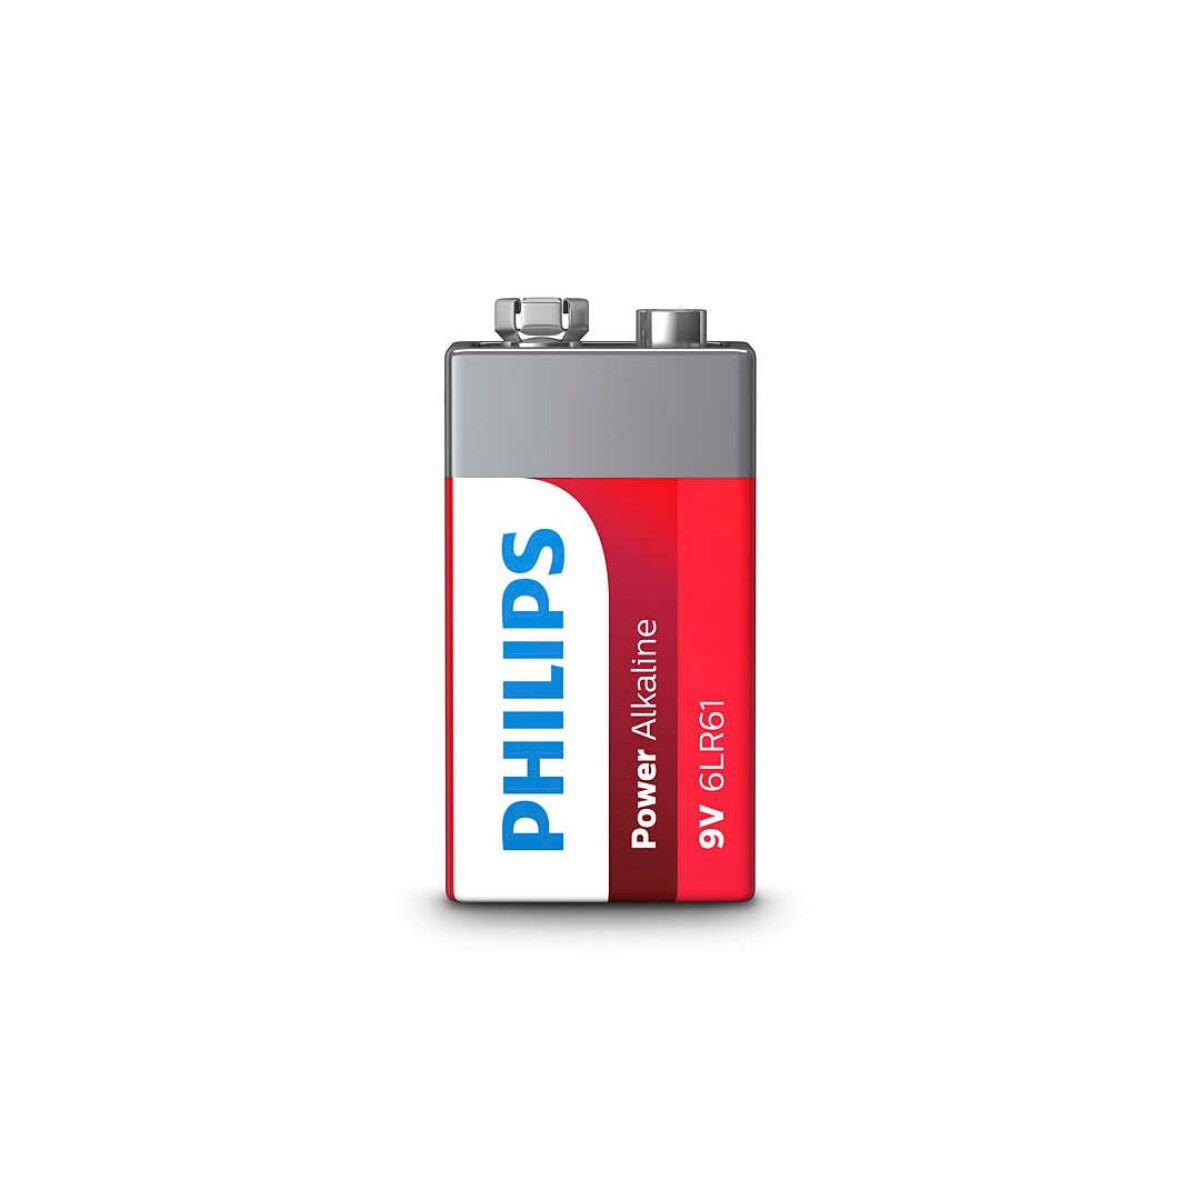 Pilas | Bateria 9v Alcalina PHILIPS - 6LR61P1B/97 - Pilas | Bateria 9v Alcalina Philips - 6lr61p1b/97 